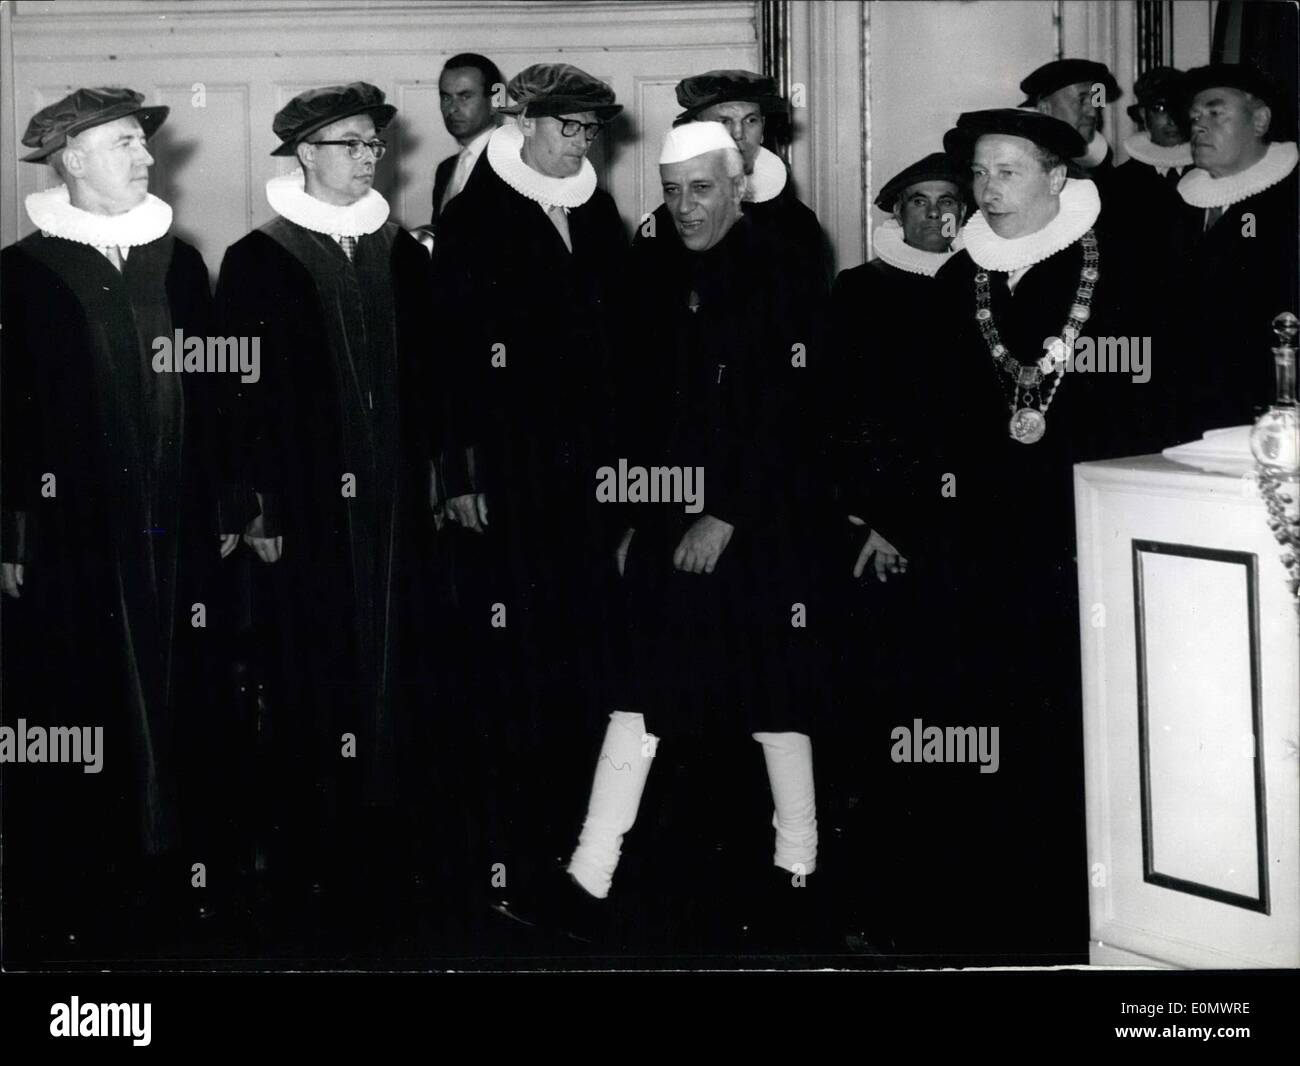 Juillet 07, 1956 - Le Premier Ministre indien Nehru devint un deux-temps doctorat honorifique lors d'une cérémonie organisée à la salle de musique de Hambourg. L'université a attribué un doctorat honorifique des facultés de médecine et juridique. Photo : Le Premier Ministre Nehru et le Professeur Principal Kolb avec le prof Banque D'Images